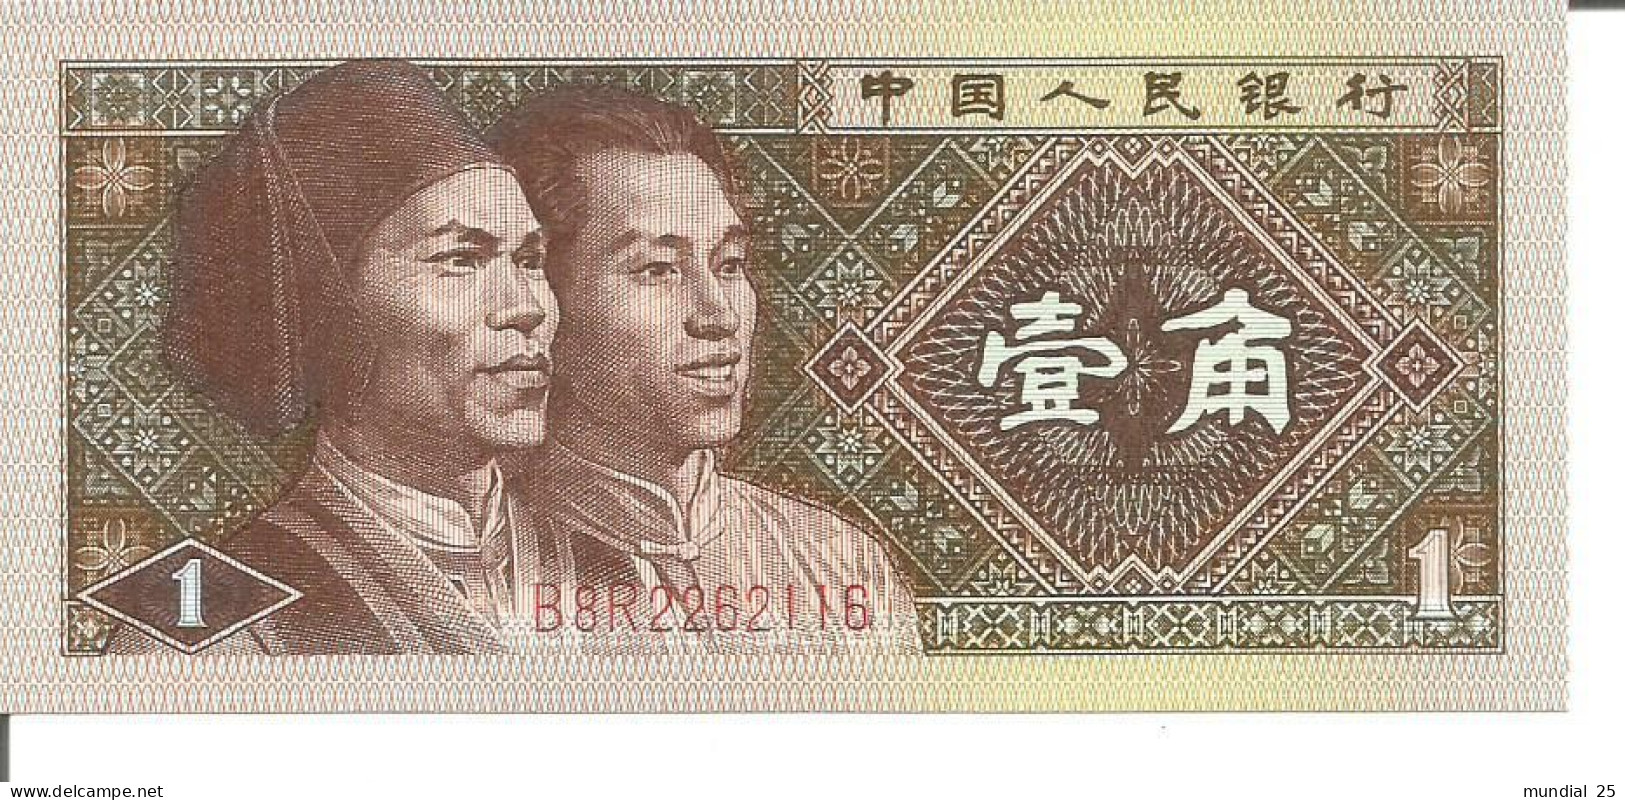 CHINA 1 JIAO 1980 - China